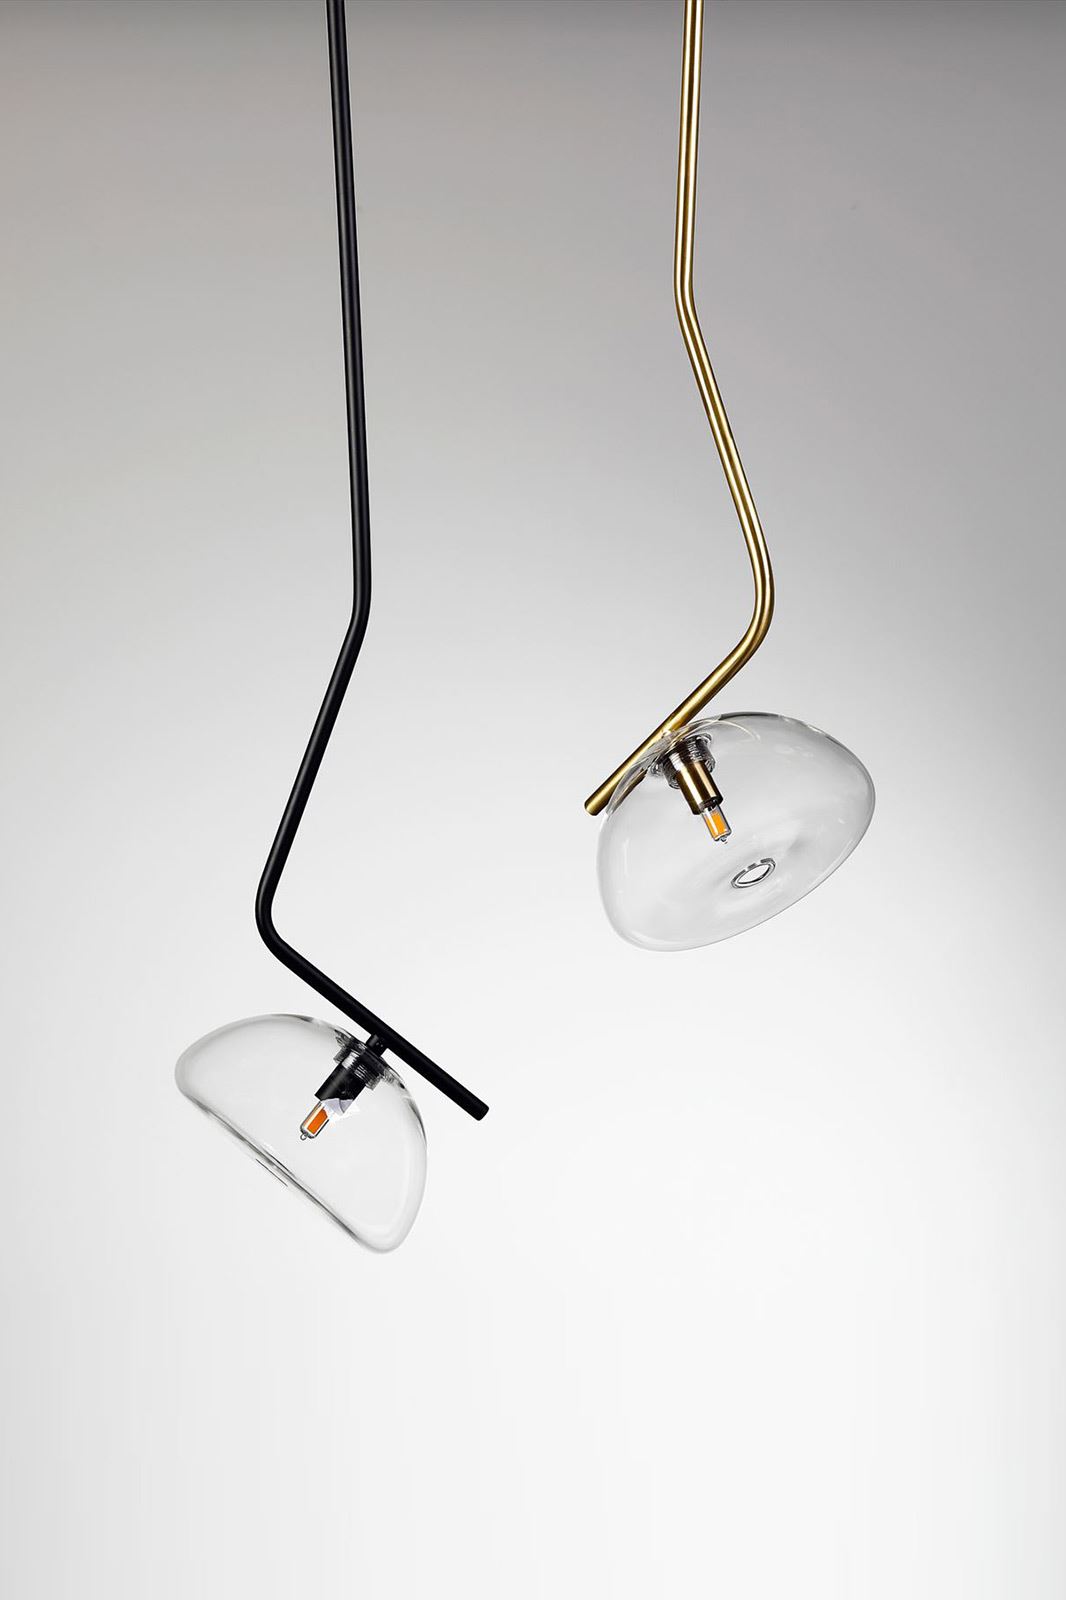 גופי תאורה בקטגוריית מנורות תליה שם המוצר Topaz • Dori Kimhi Lighting 9052